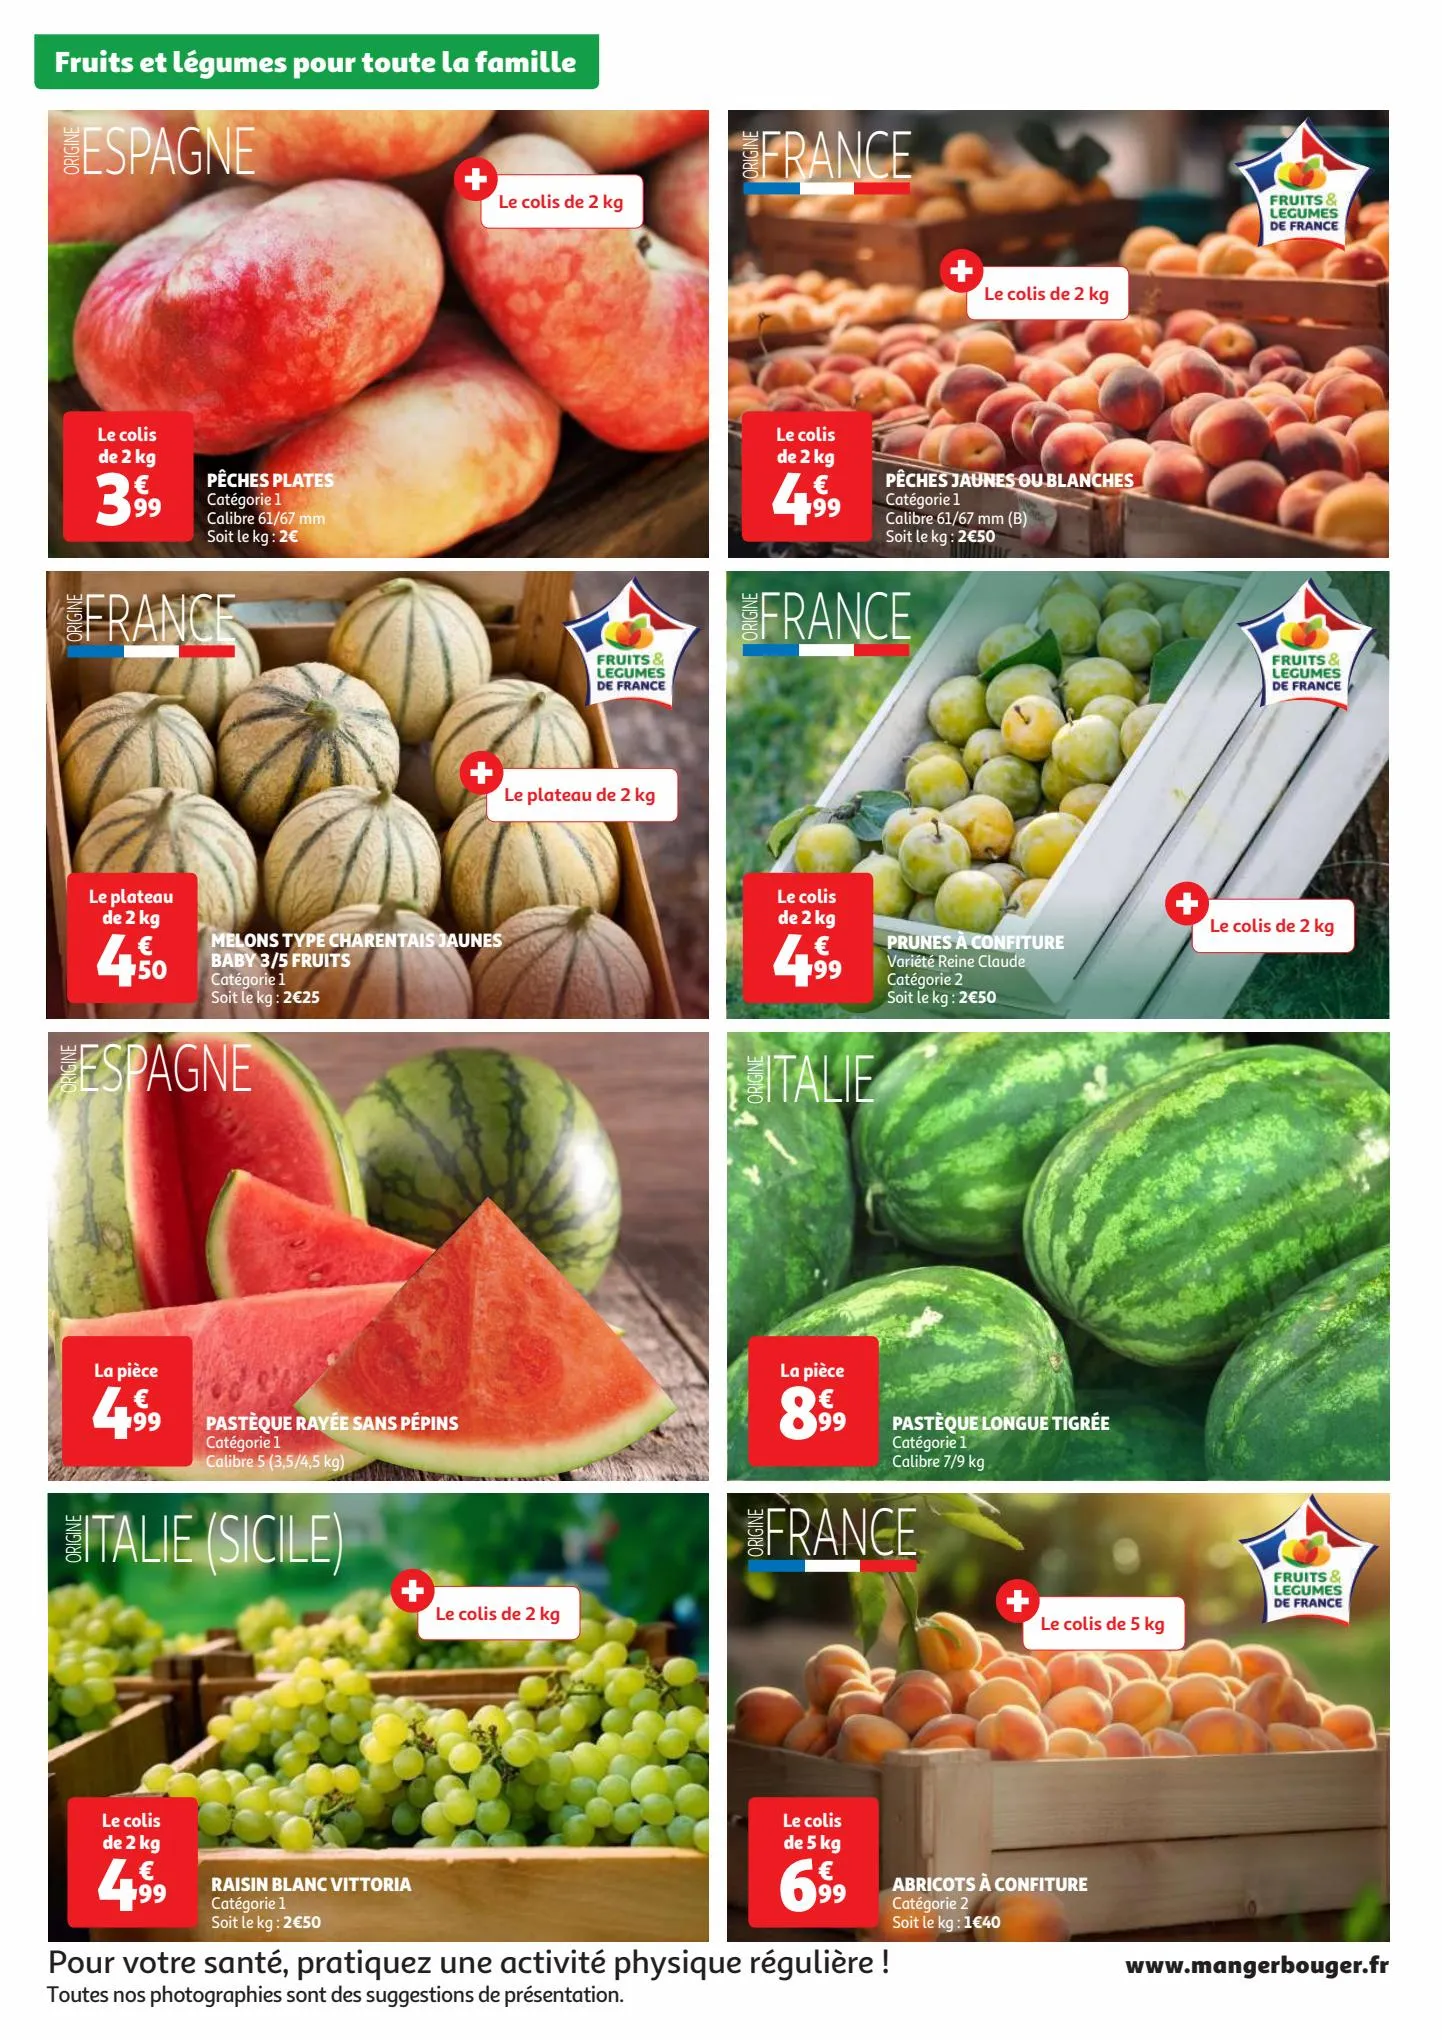 Catalogue Fruits et légumes pour toute la famille., page 00002